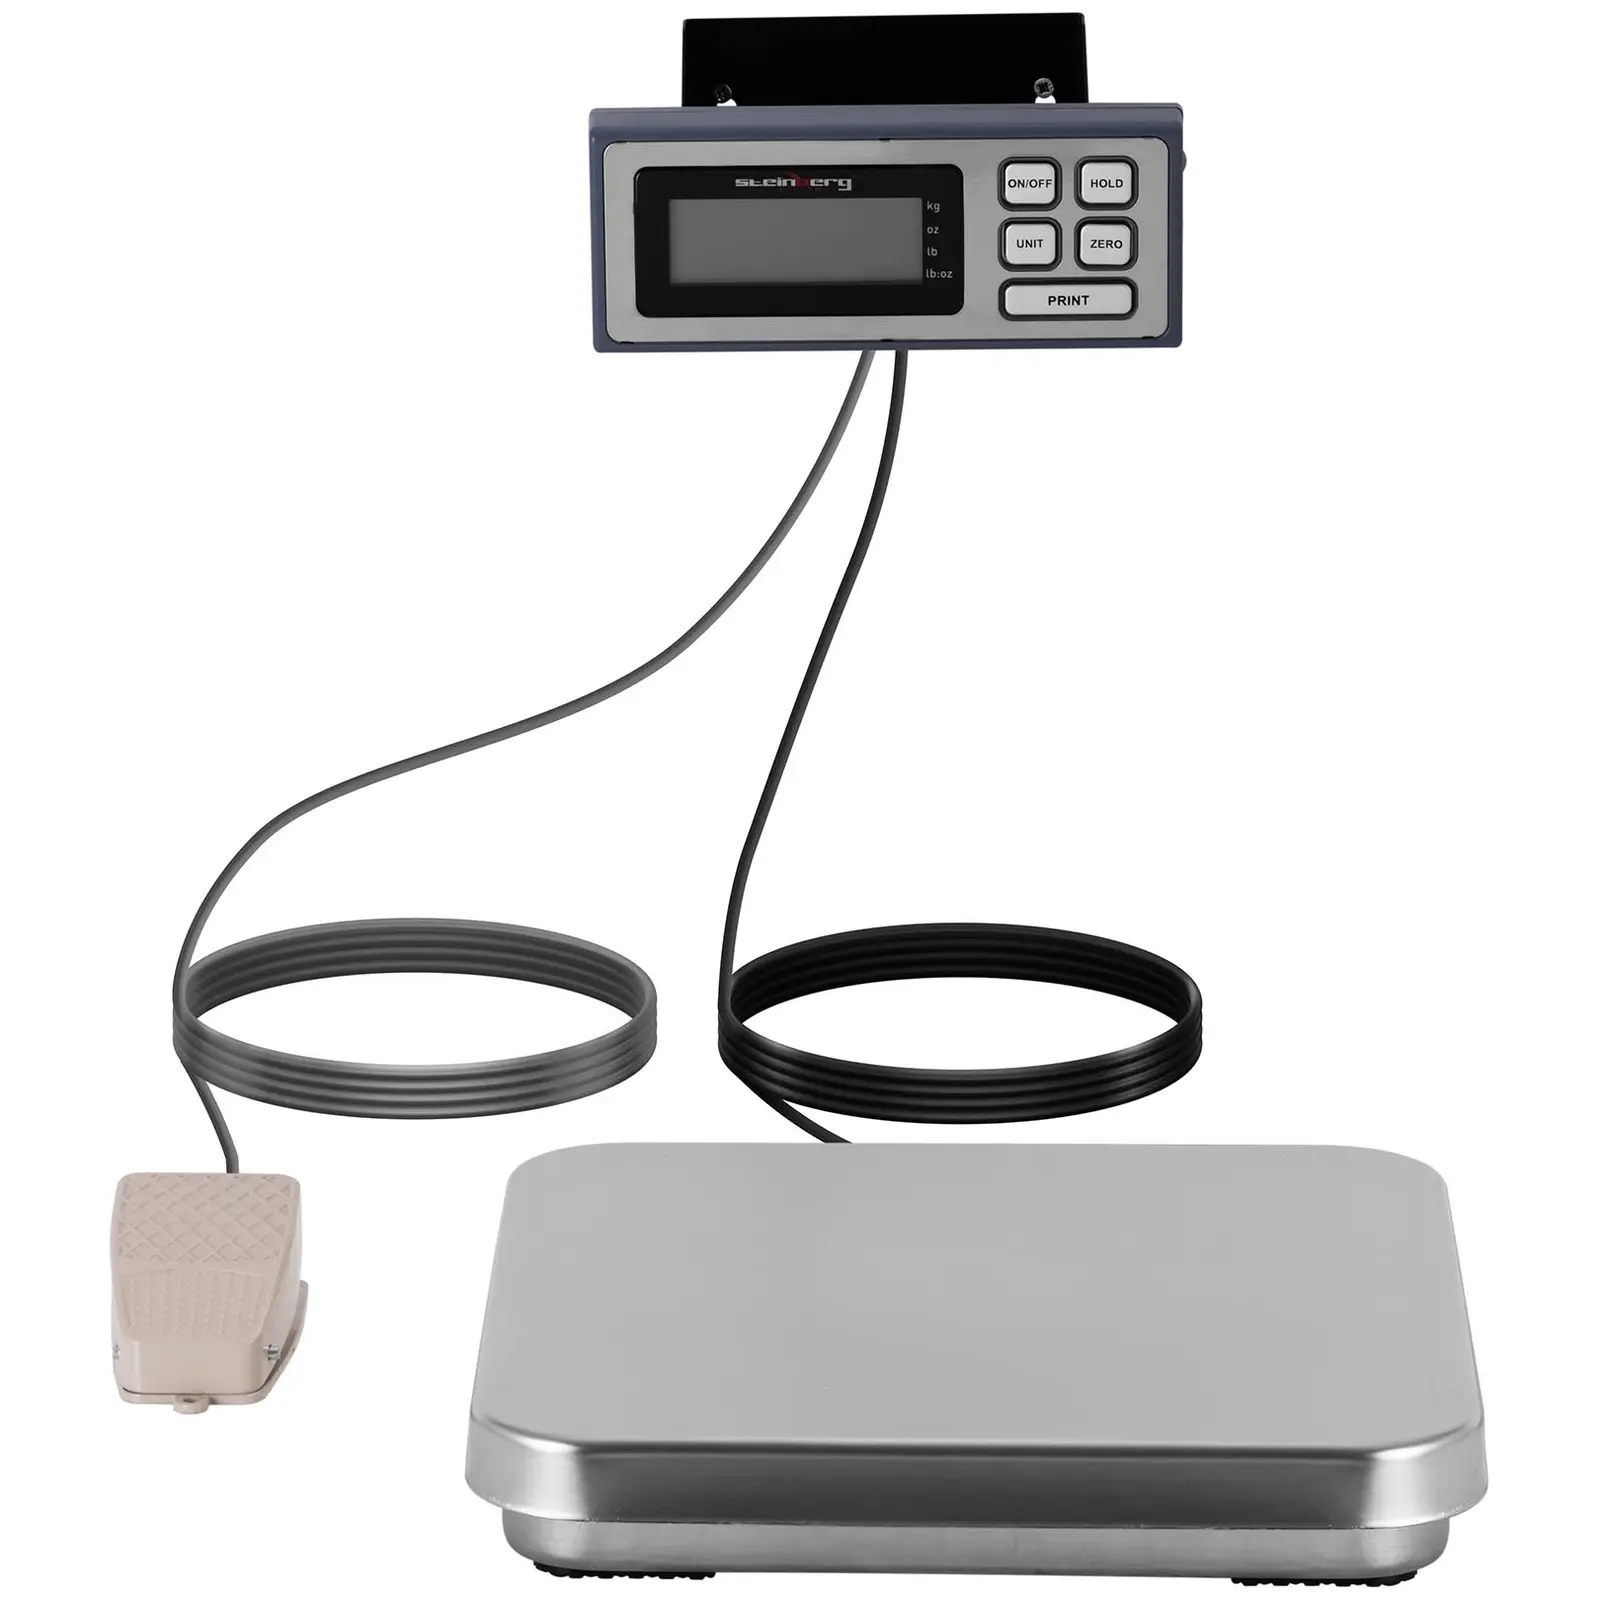 Balance de cuisine - pédale - 10 kg / 2 g - 320 x 310 mm - LCD